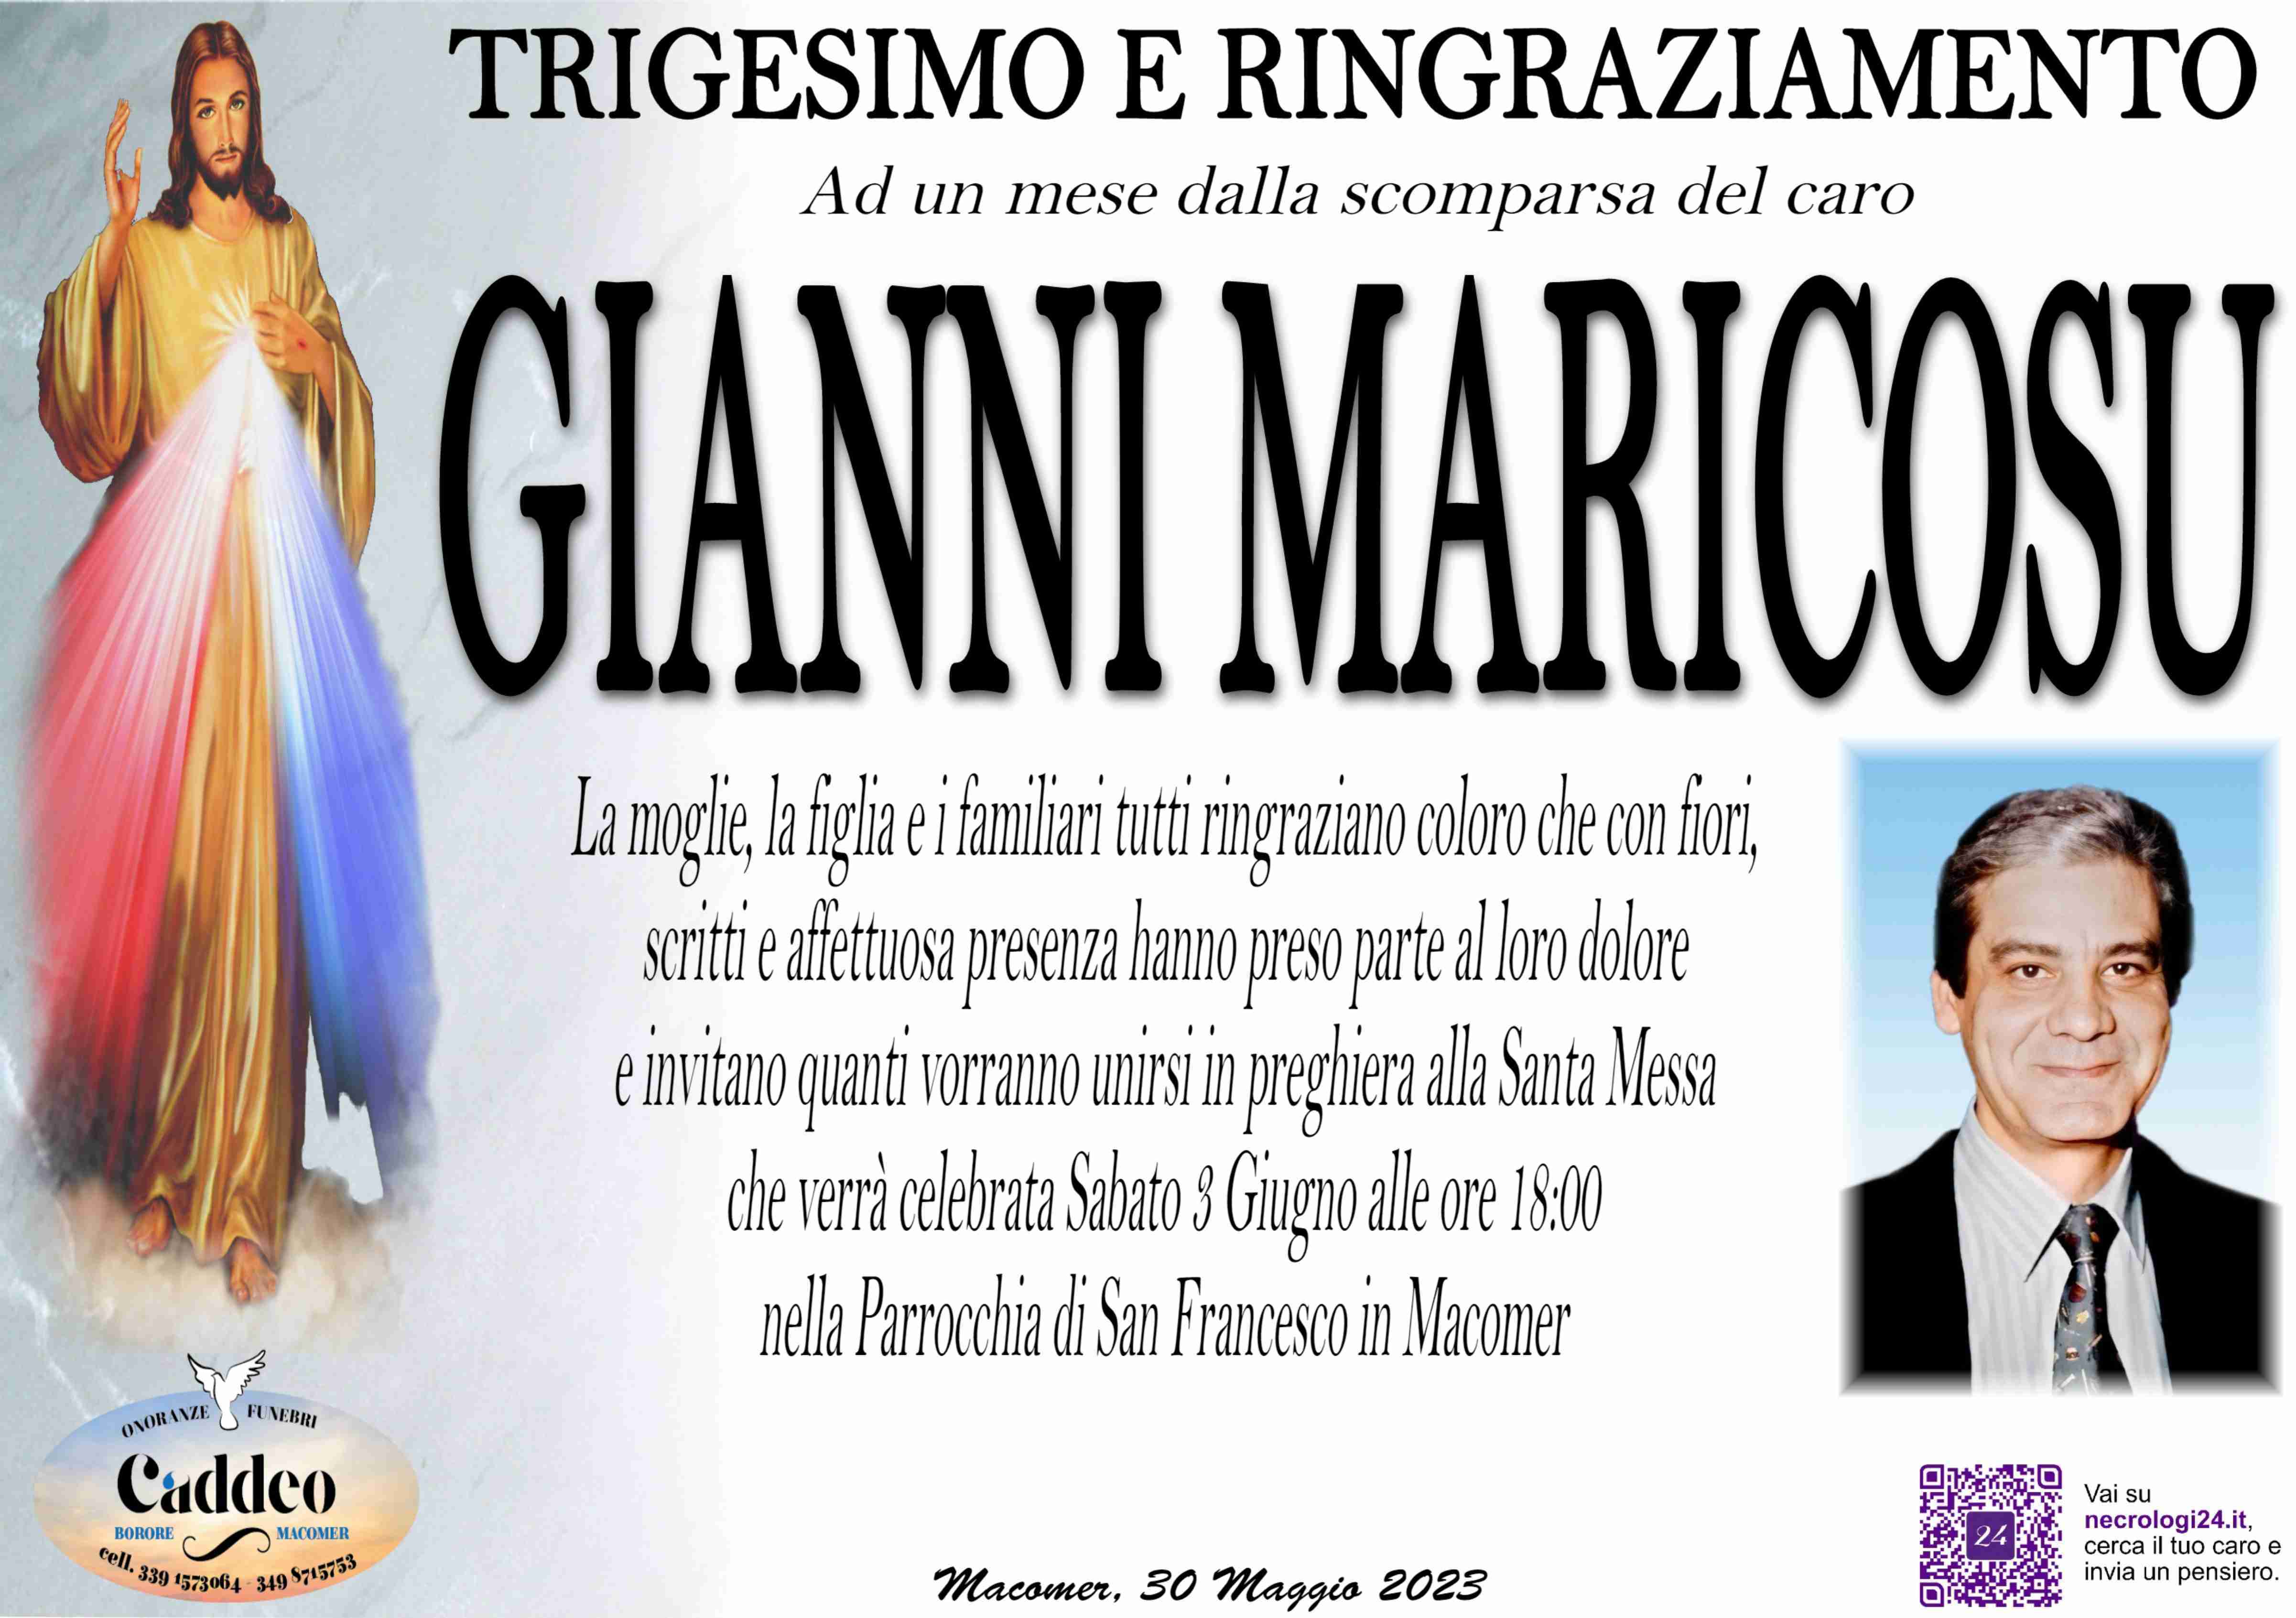 Gianni Maricosu